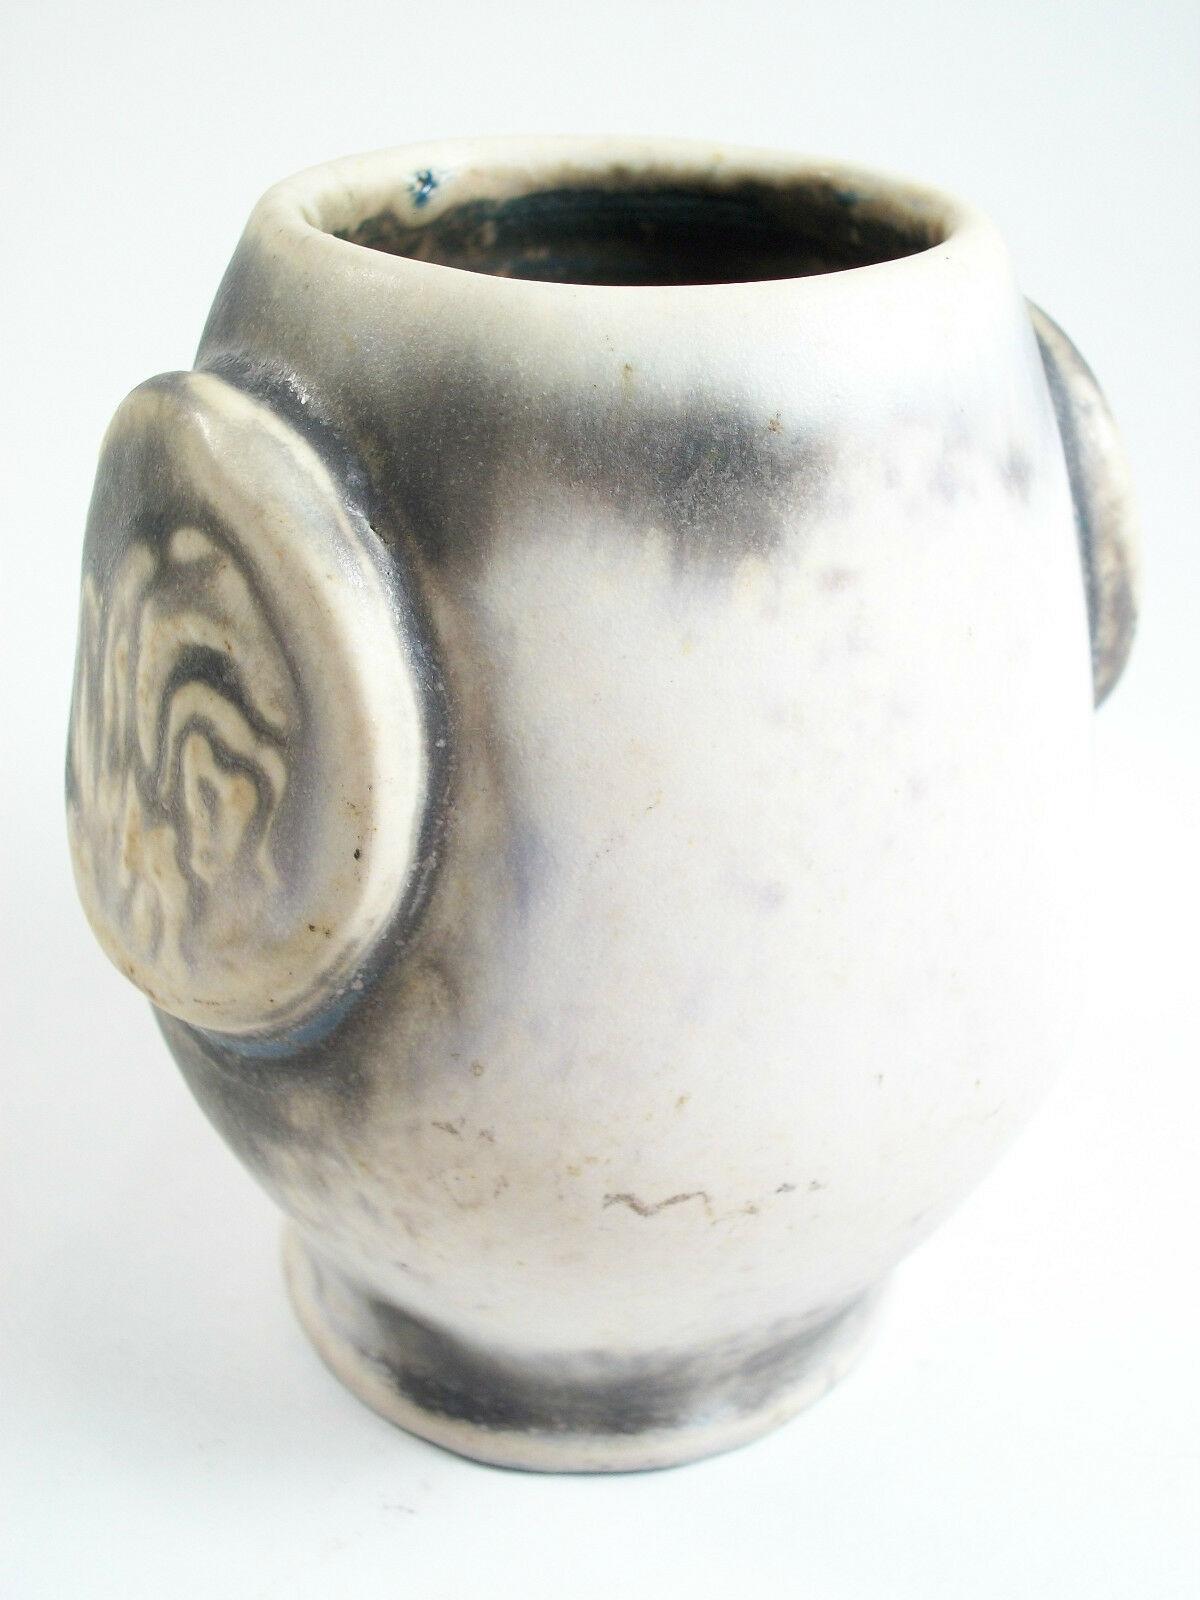 LOUIS MATHE - Vintage Studio Keramik Vase mit applizierten Medaillongriffen mit graviertem Muskox - dicke matte zweifarbige graue Glasur über dem Steingutkörper - dunkle matte Glasur im Inneren - signiert und datiert auf dem Sockel - Kanada - um